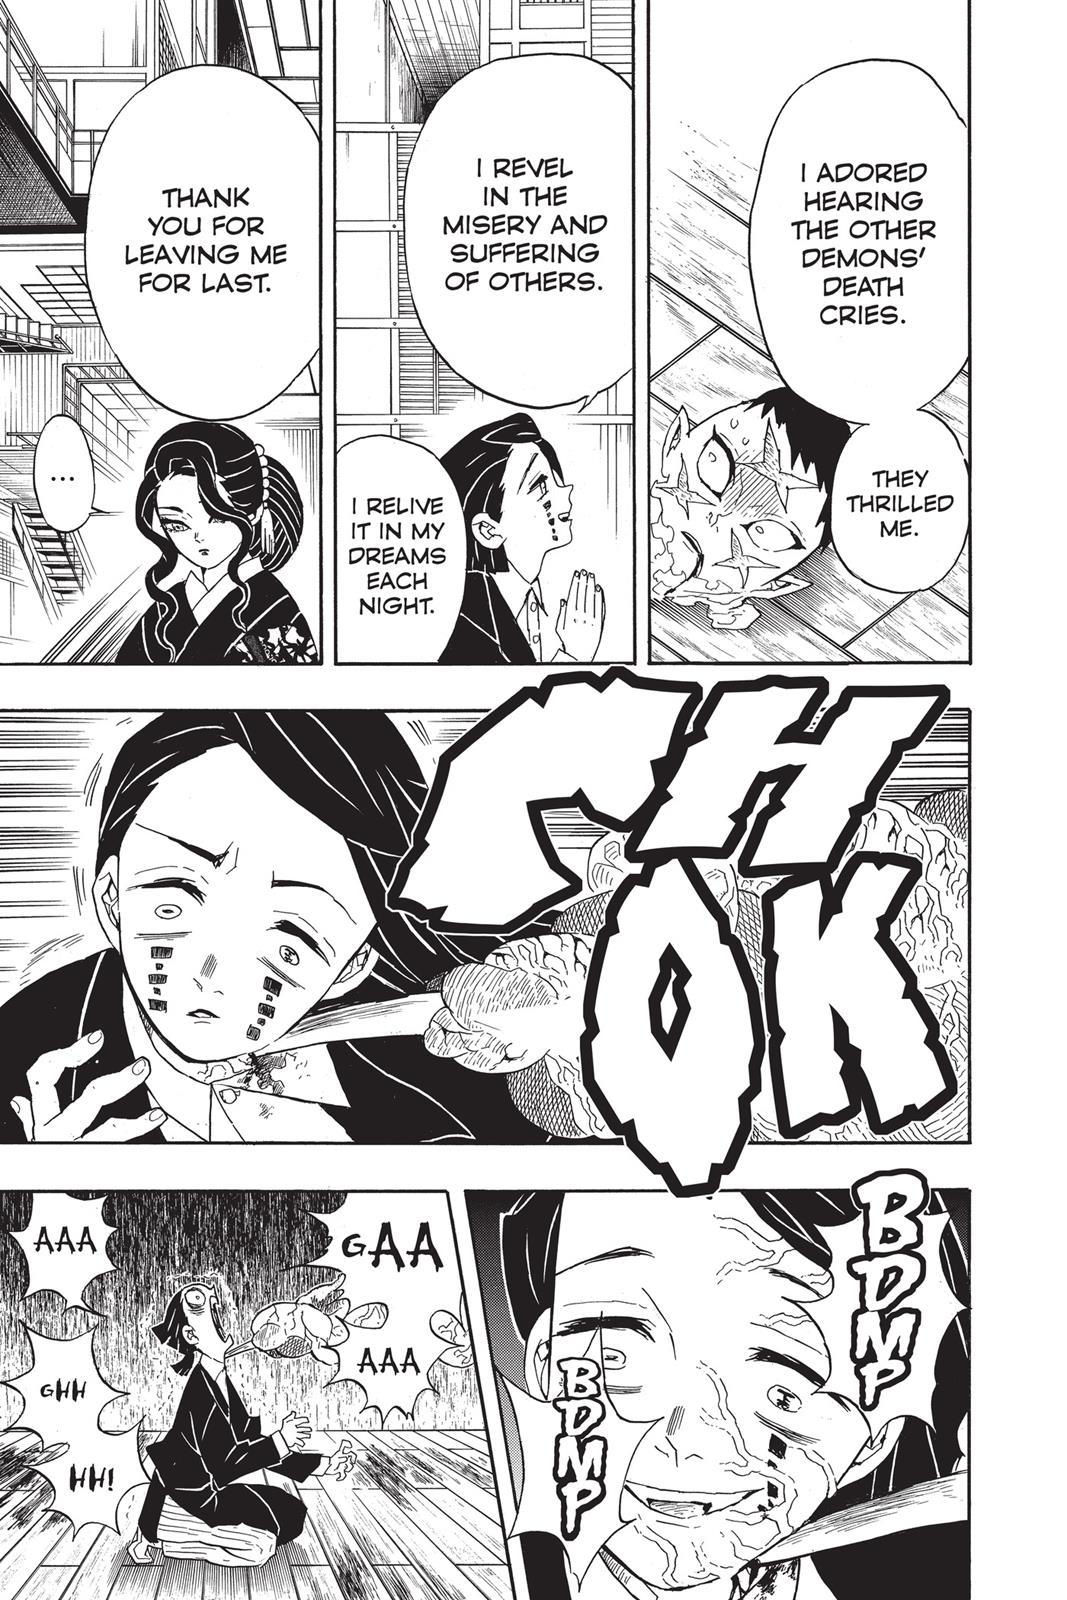 Demon Slayer Manga Manga Chapter - 52 - image 8